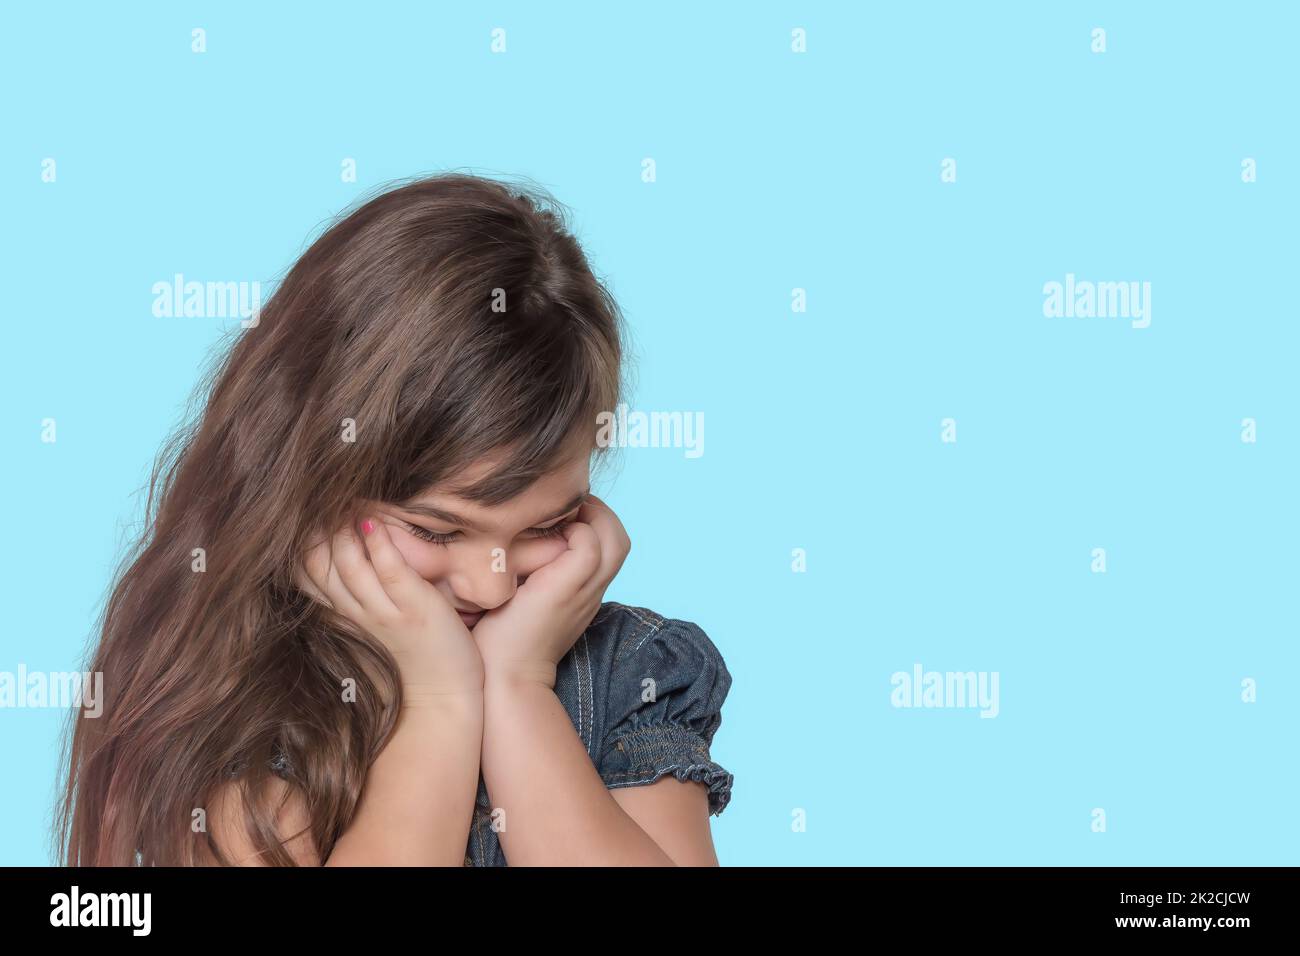 Das braune, schäbige kleine Mädchen posiert auf zyanischem Hintergrund. Stockfoto